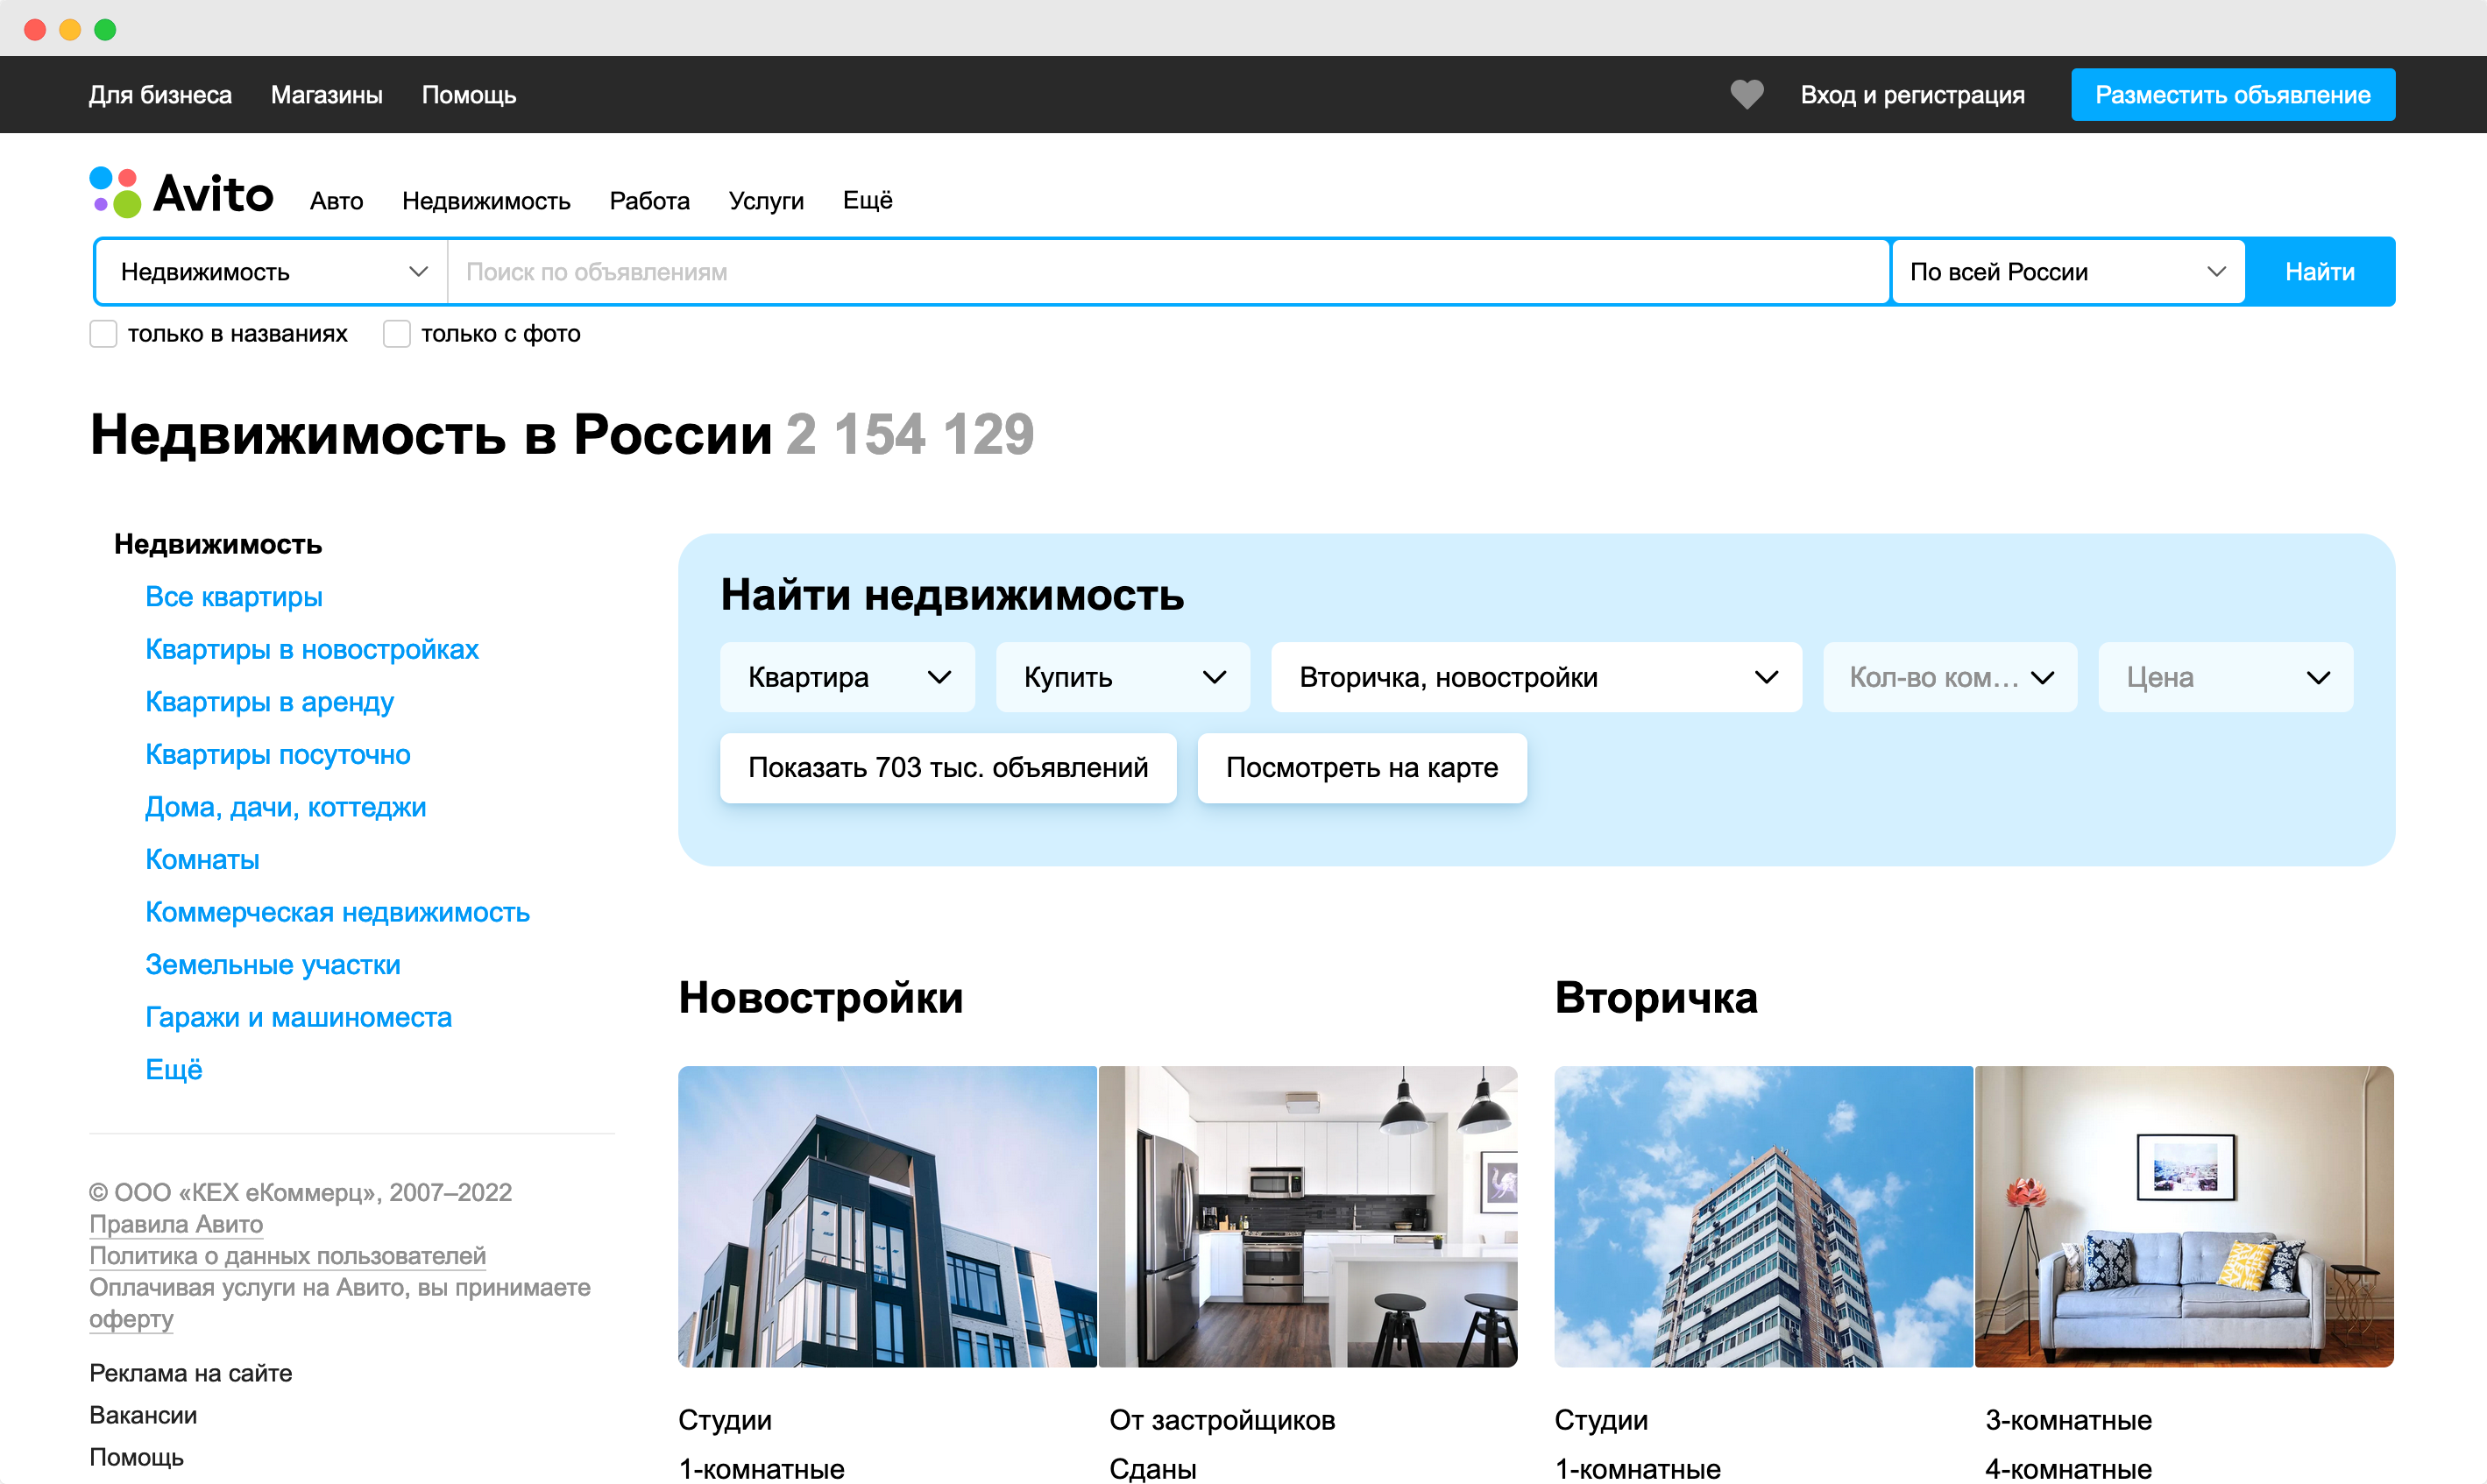 Авита ру недвижимость. Поиск отелей. Поиск отелей по всему миру. Поиск отелей в России. Сайты для поиска отелей в России.